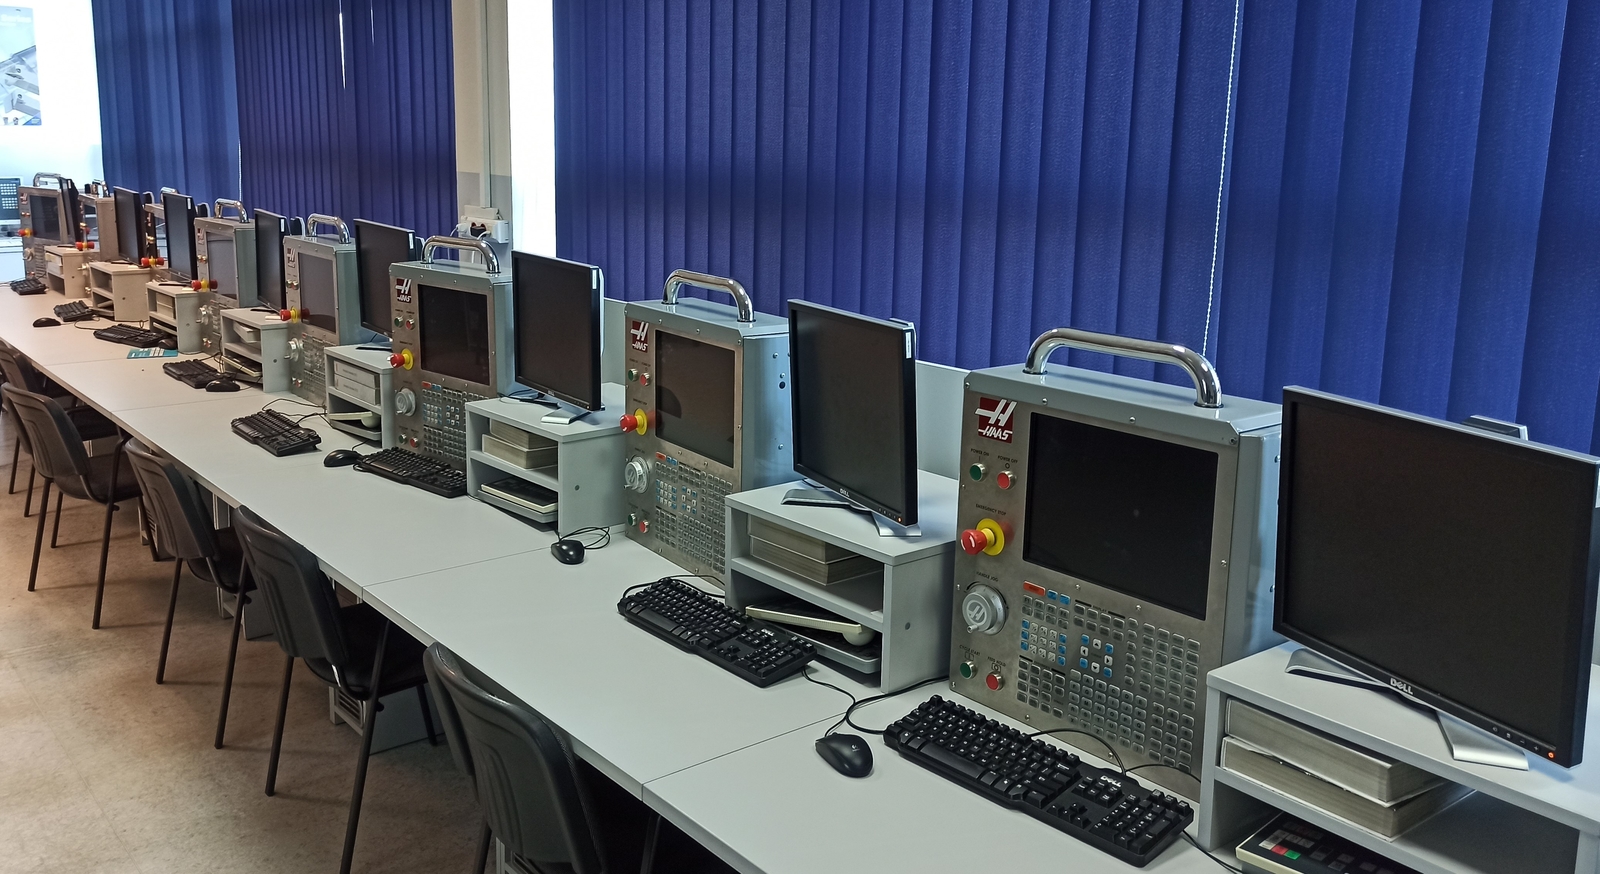 Na zdjęciu znajduje się widok na salę laboratoryjną ze stanowiskami komputerowymi.